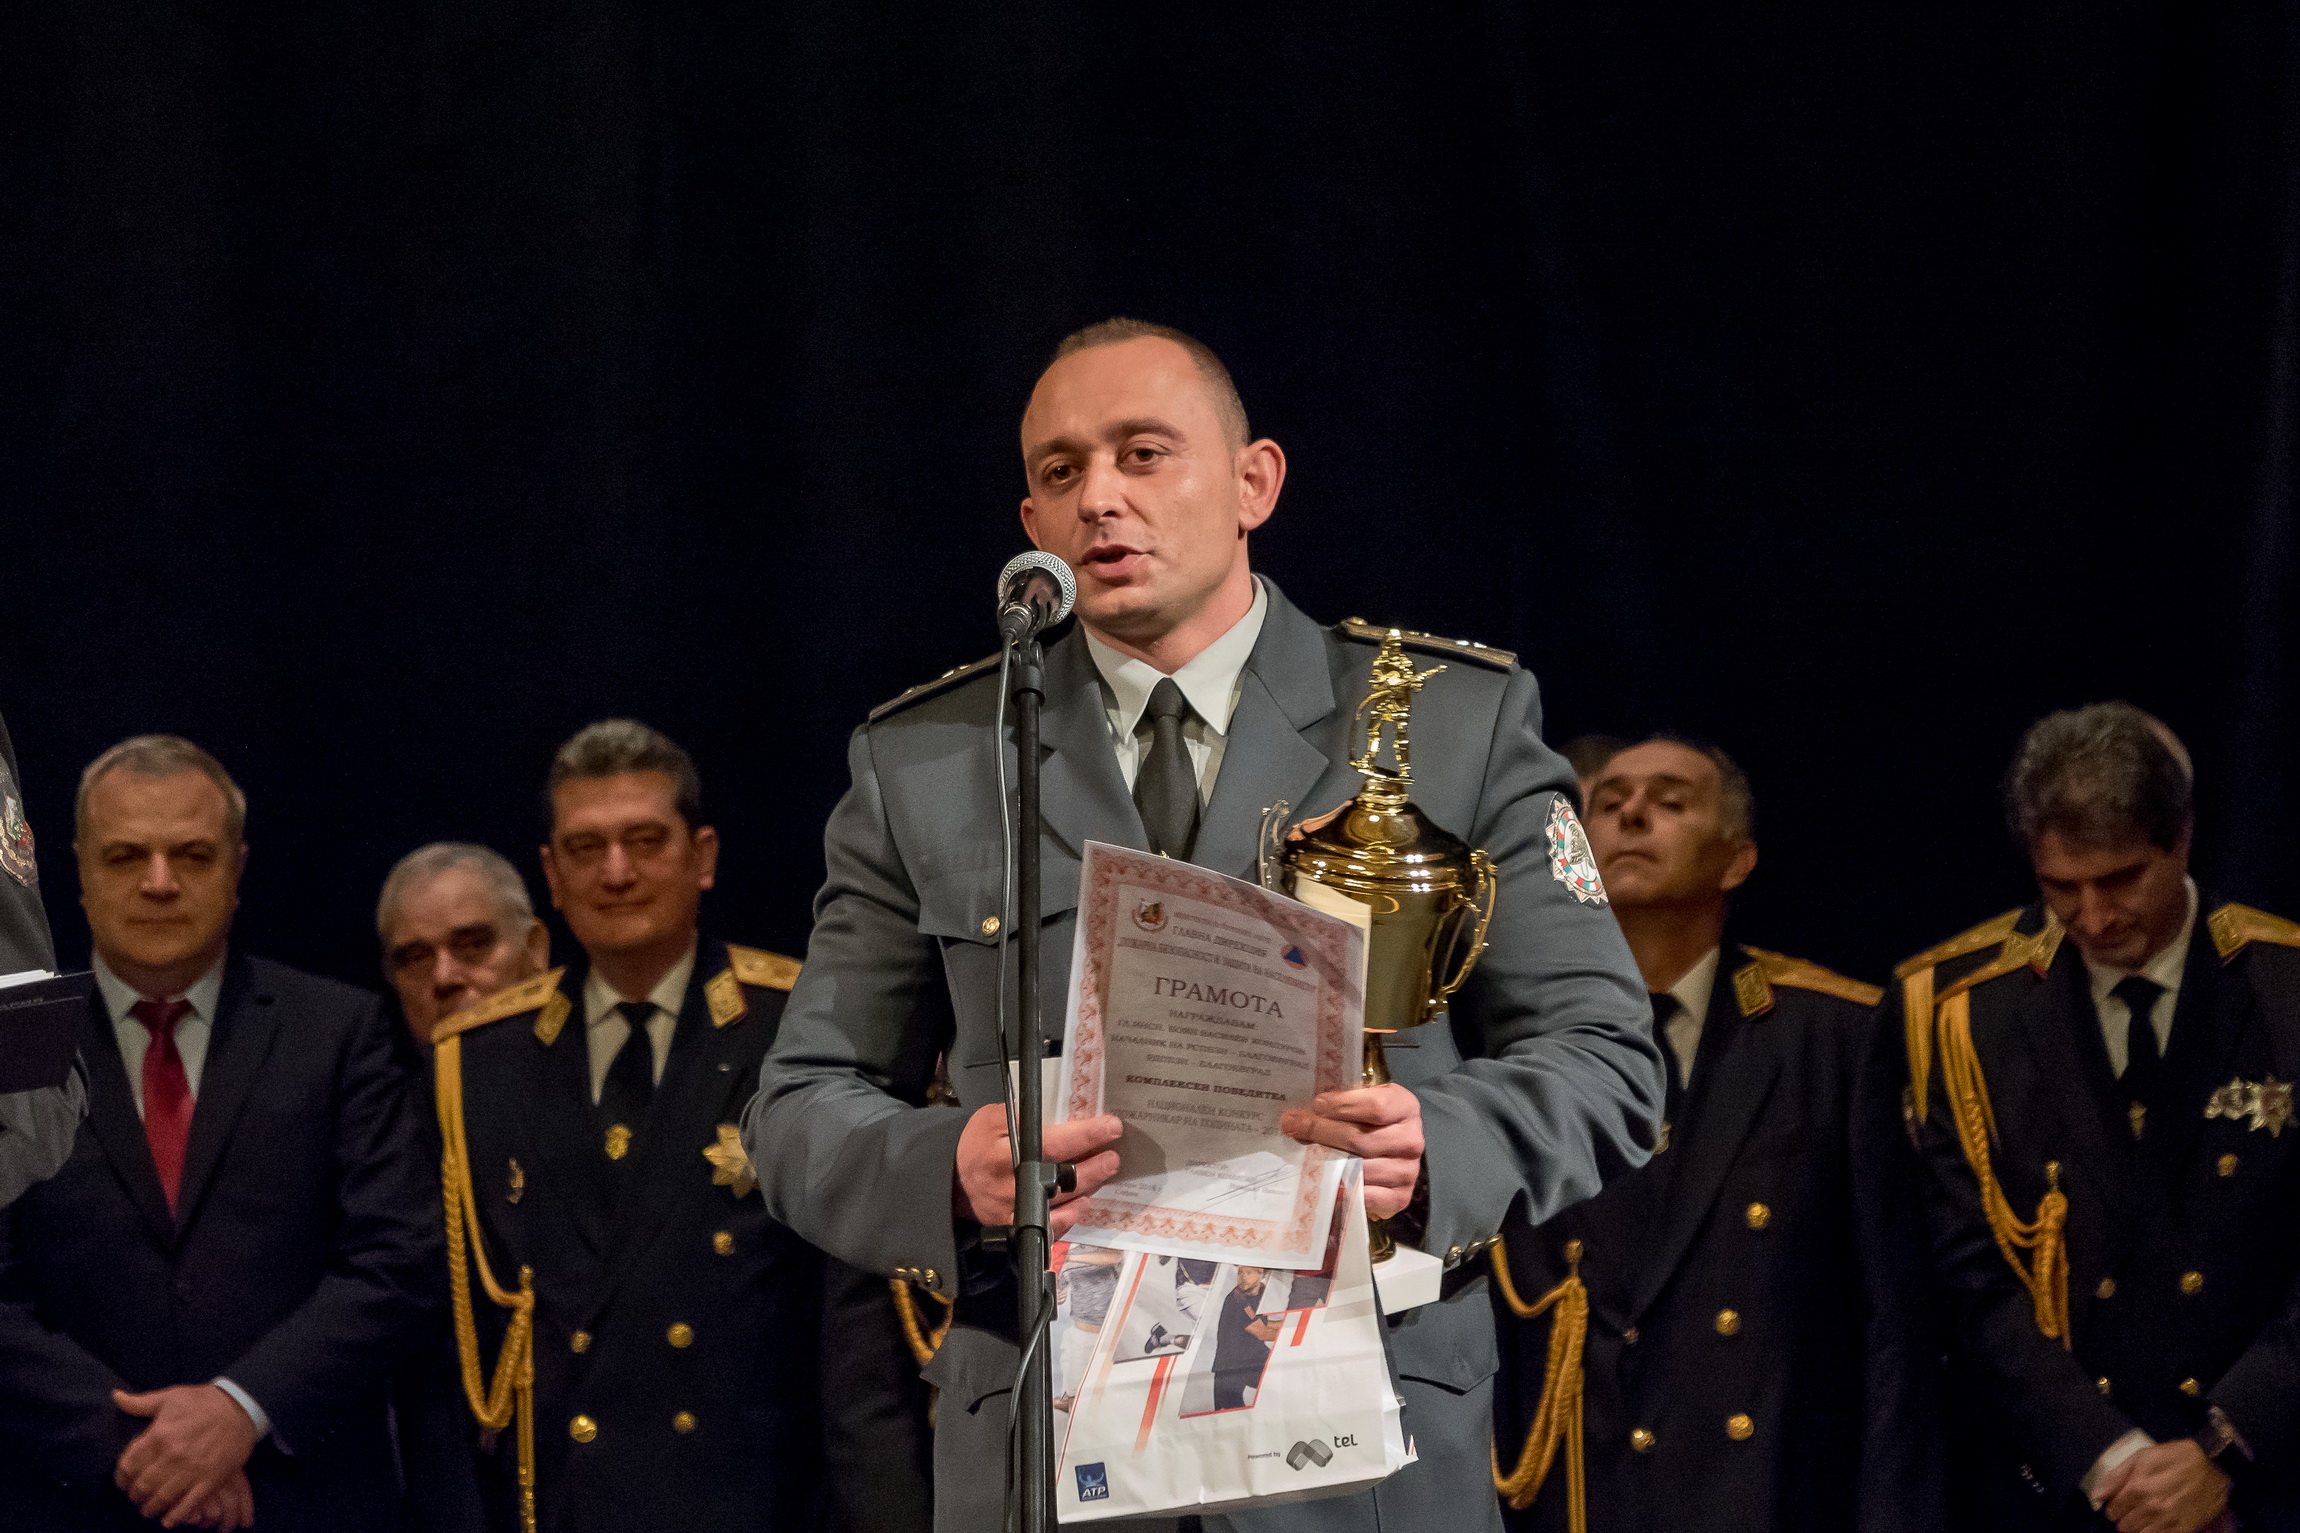 Боян Кадуров - ”Пожарникар на годината” - 2017